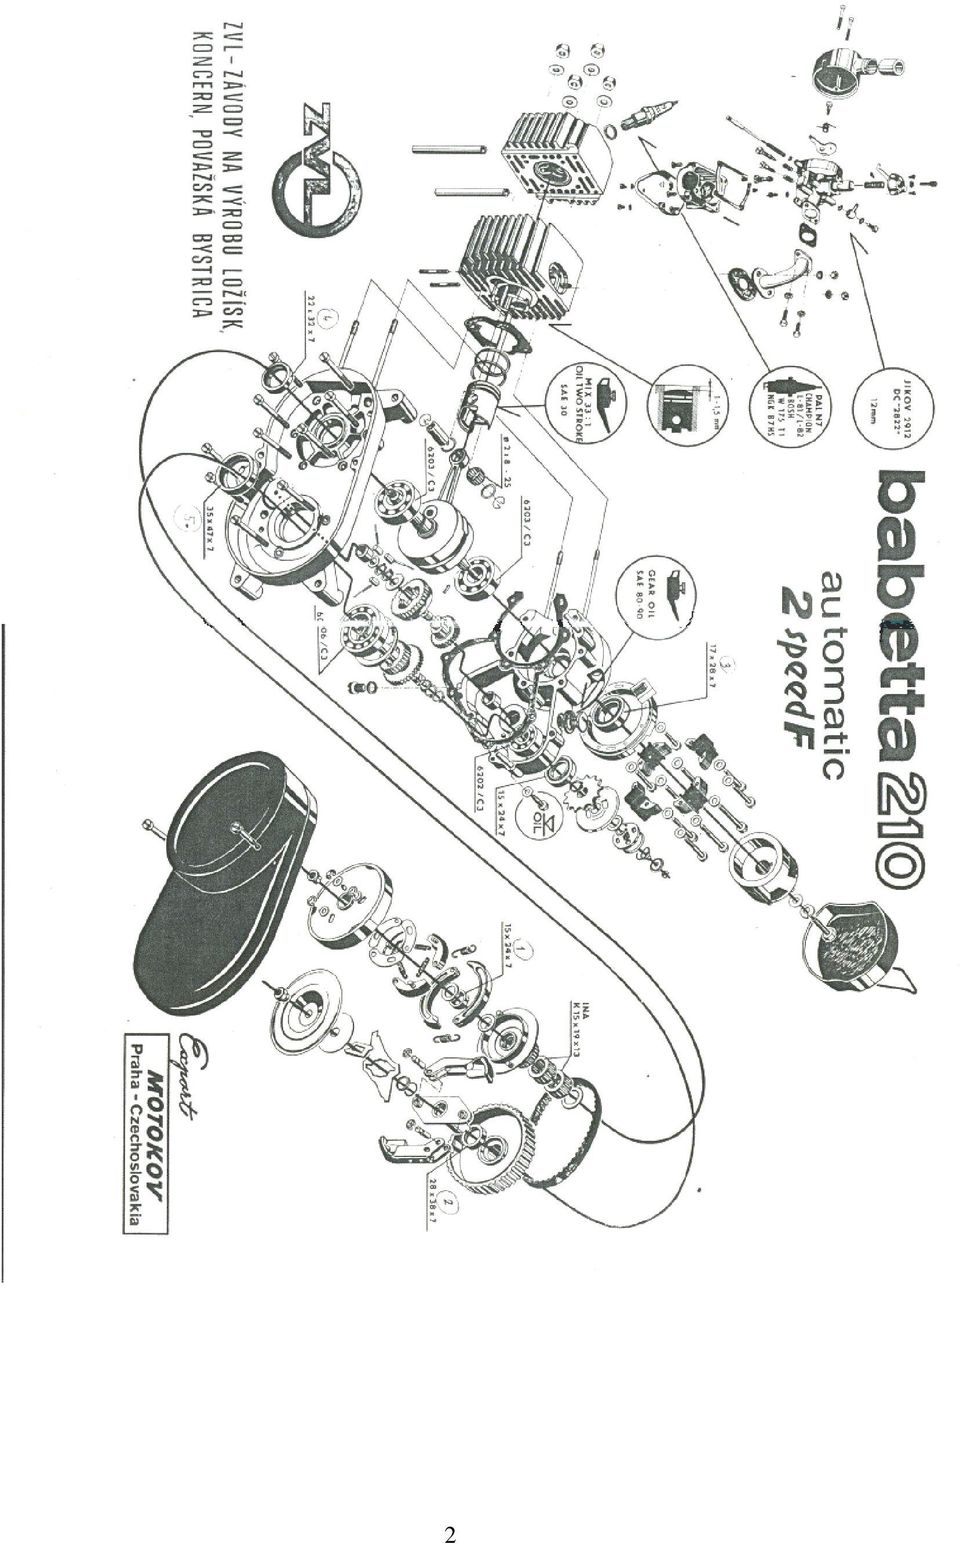 Katalog ND a manuál. Pro moped JAWA BABETTA PDF Free Download